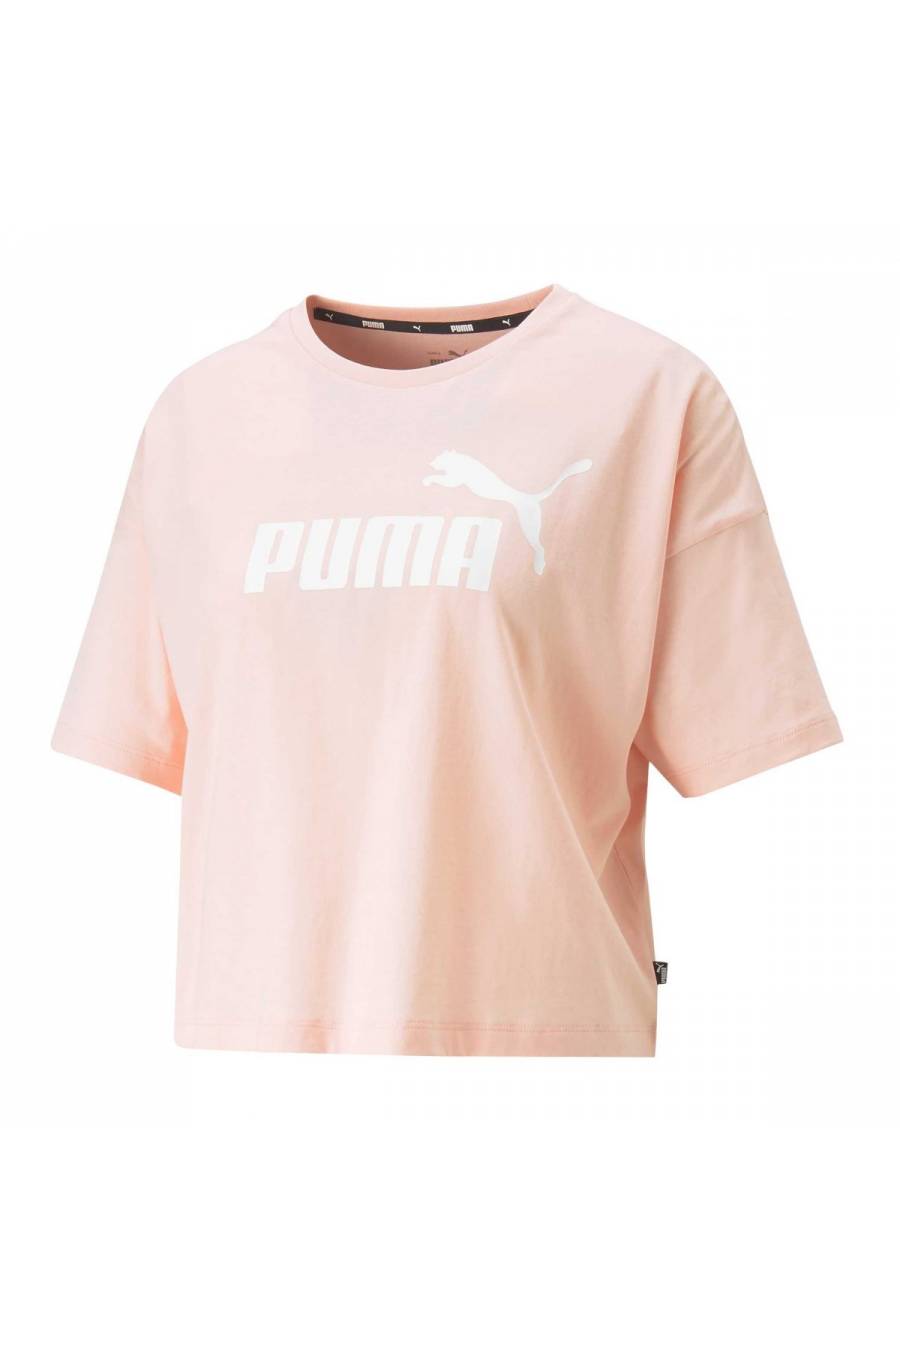 Camiseta Puma Essentials Cropped Logo 586866-96